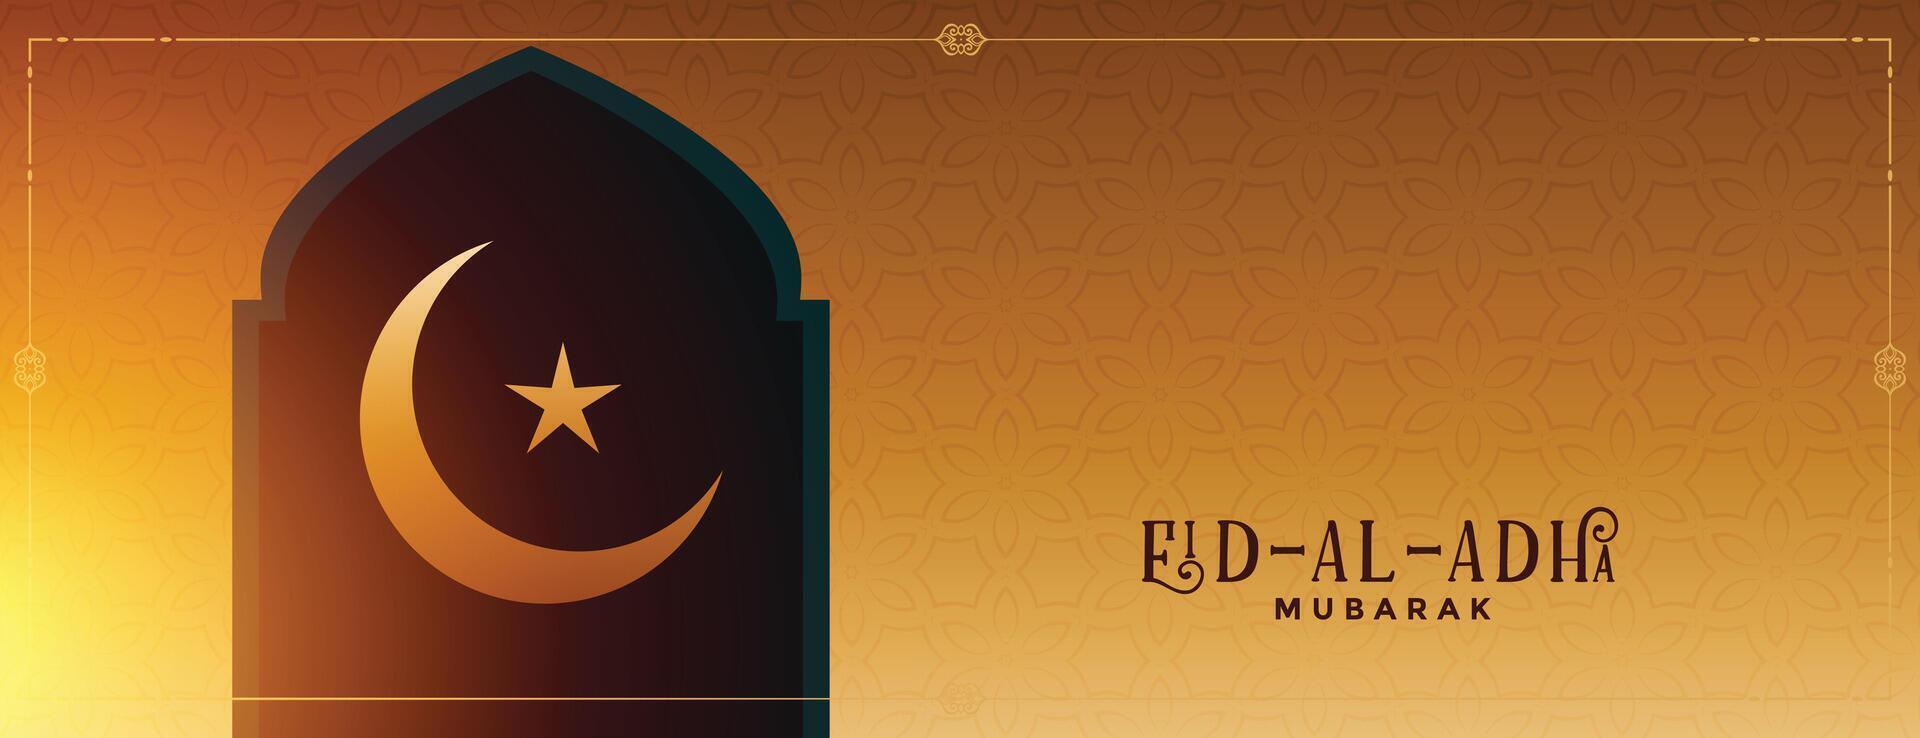 eid al adha Islamitisch festival wensen banier ontwerp vector